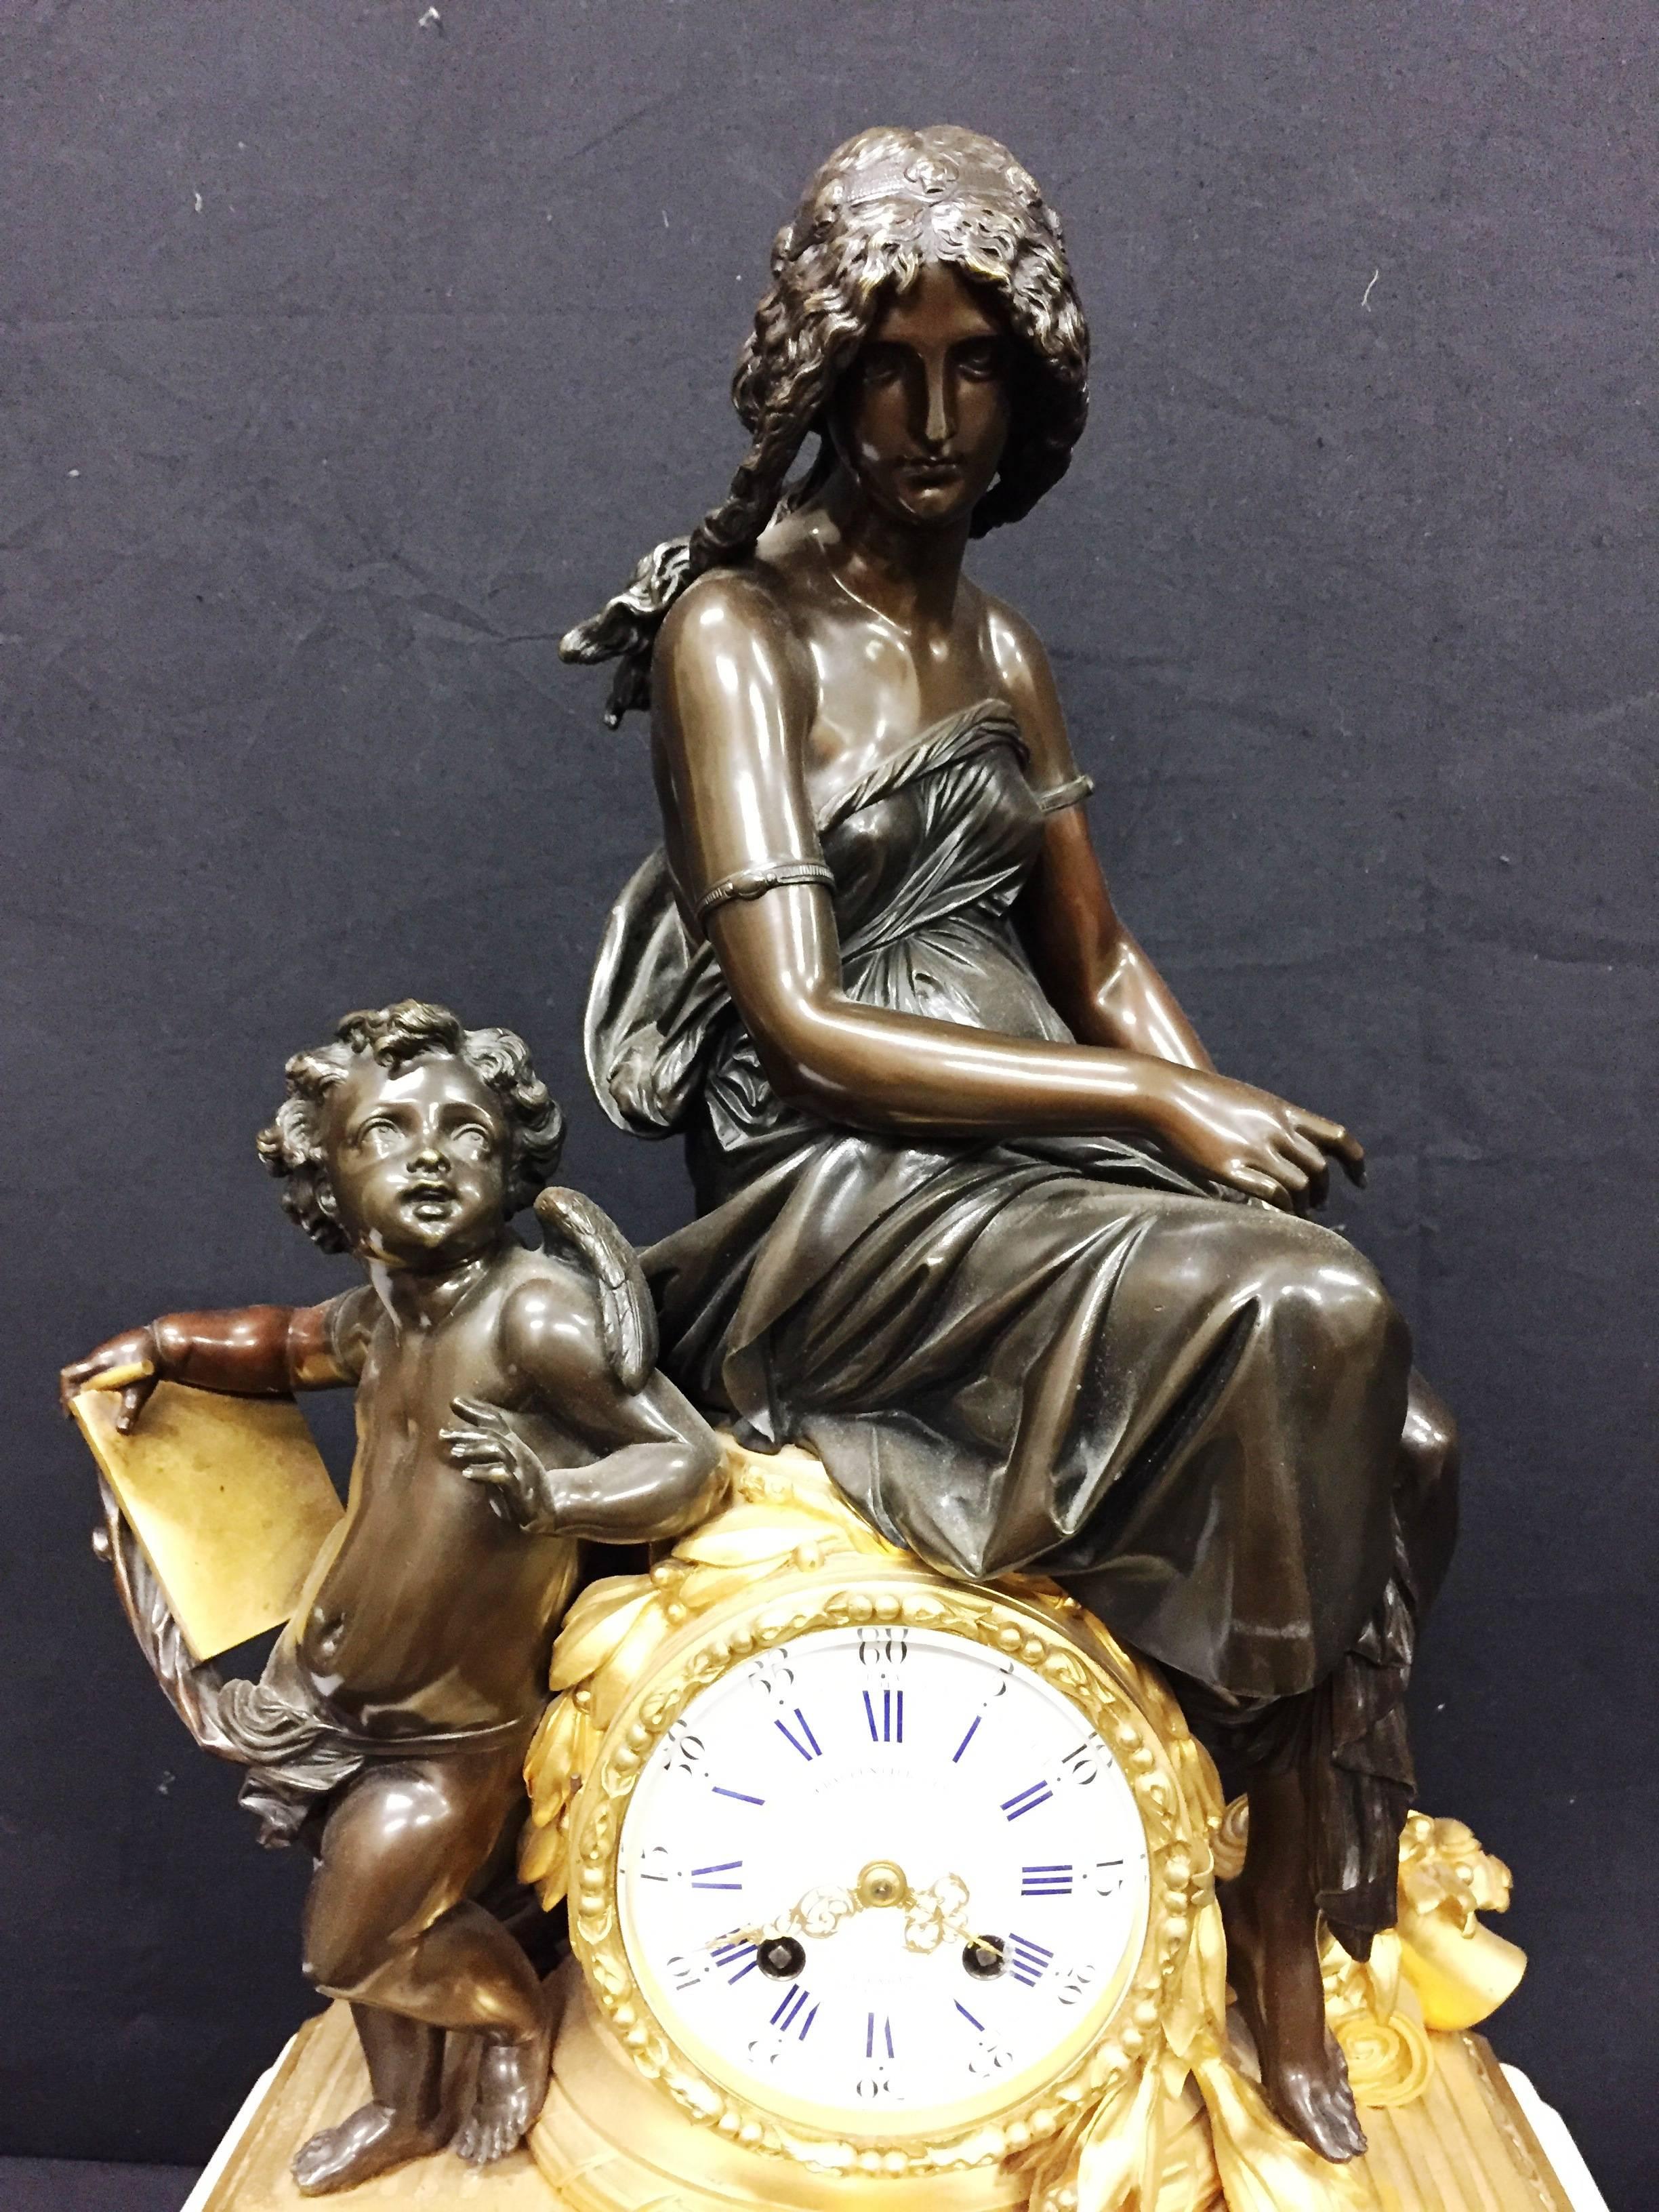 Une très bonne horloge de cheminée française du 19ème siècle en bronze et bronze doré avec une mère et un enfant au-dessus et sur le côté du cadran de l'horloge. Monté sur une base en marbre blanc.